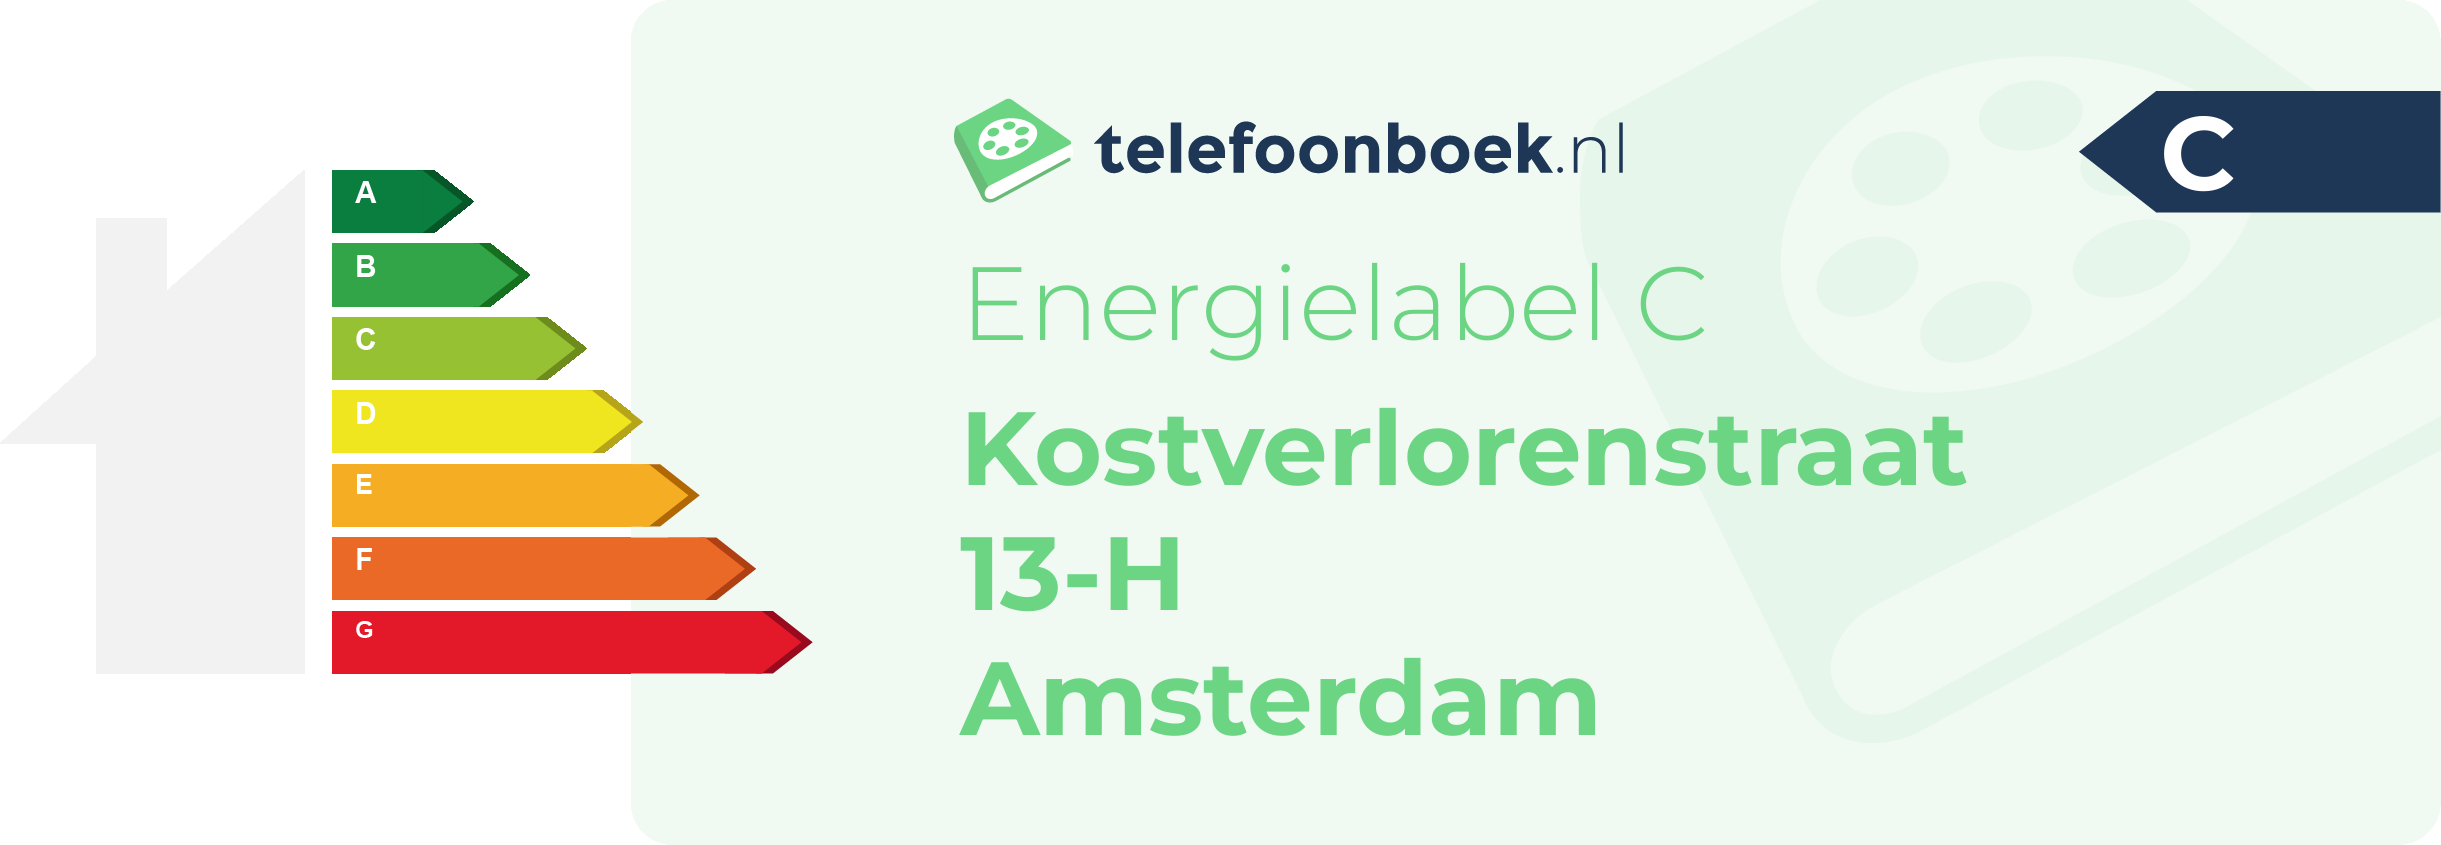 Energielabel Kostverlorenstraat 13-H Amsterdam